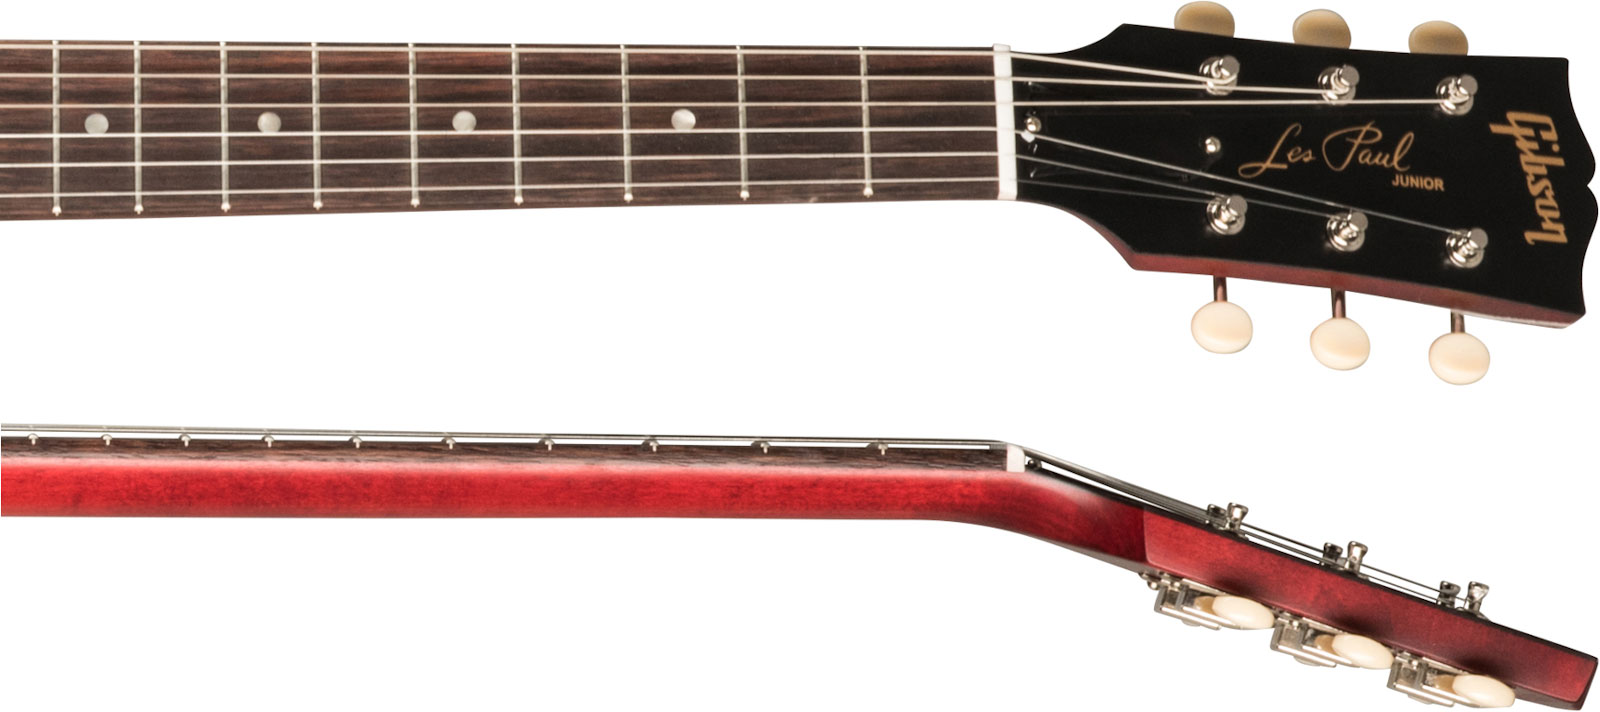 Gibson Les Paul Junior Tribute Dc Modern P90 - Worn Cherry - Guitarra eléctrica de doble corte. - Variation 3